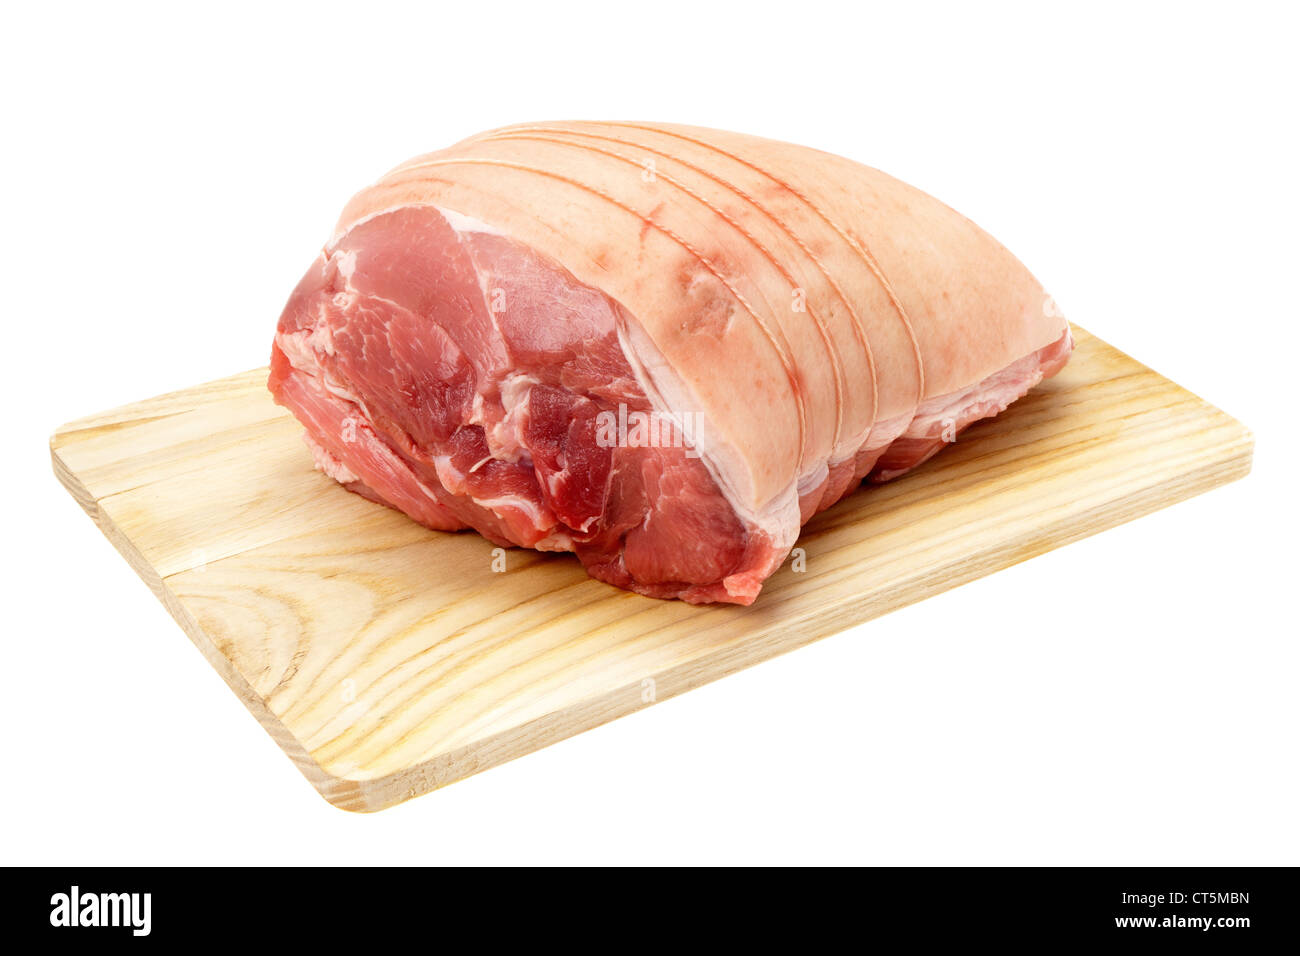 Eine ungekochte Schulter vom Schwein auf ein Holzbrett gelegt, der Metzger hat es mit einer Schnur gebunden Stockfoto